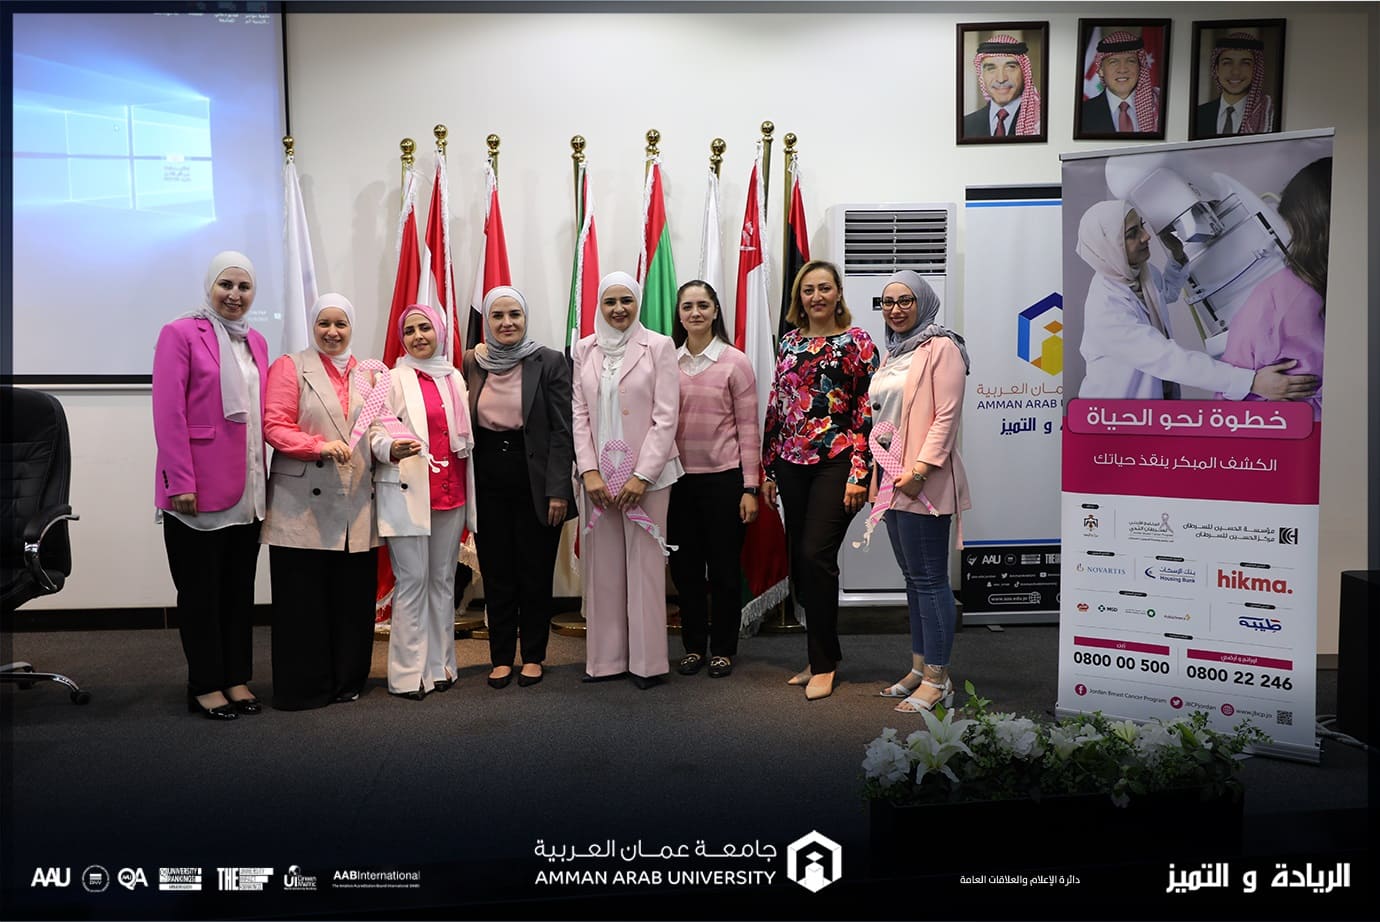 يوم توعوي حول سرطان الثدي في "عمان العربية"